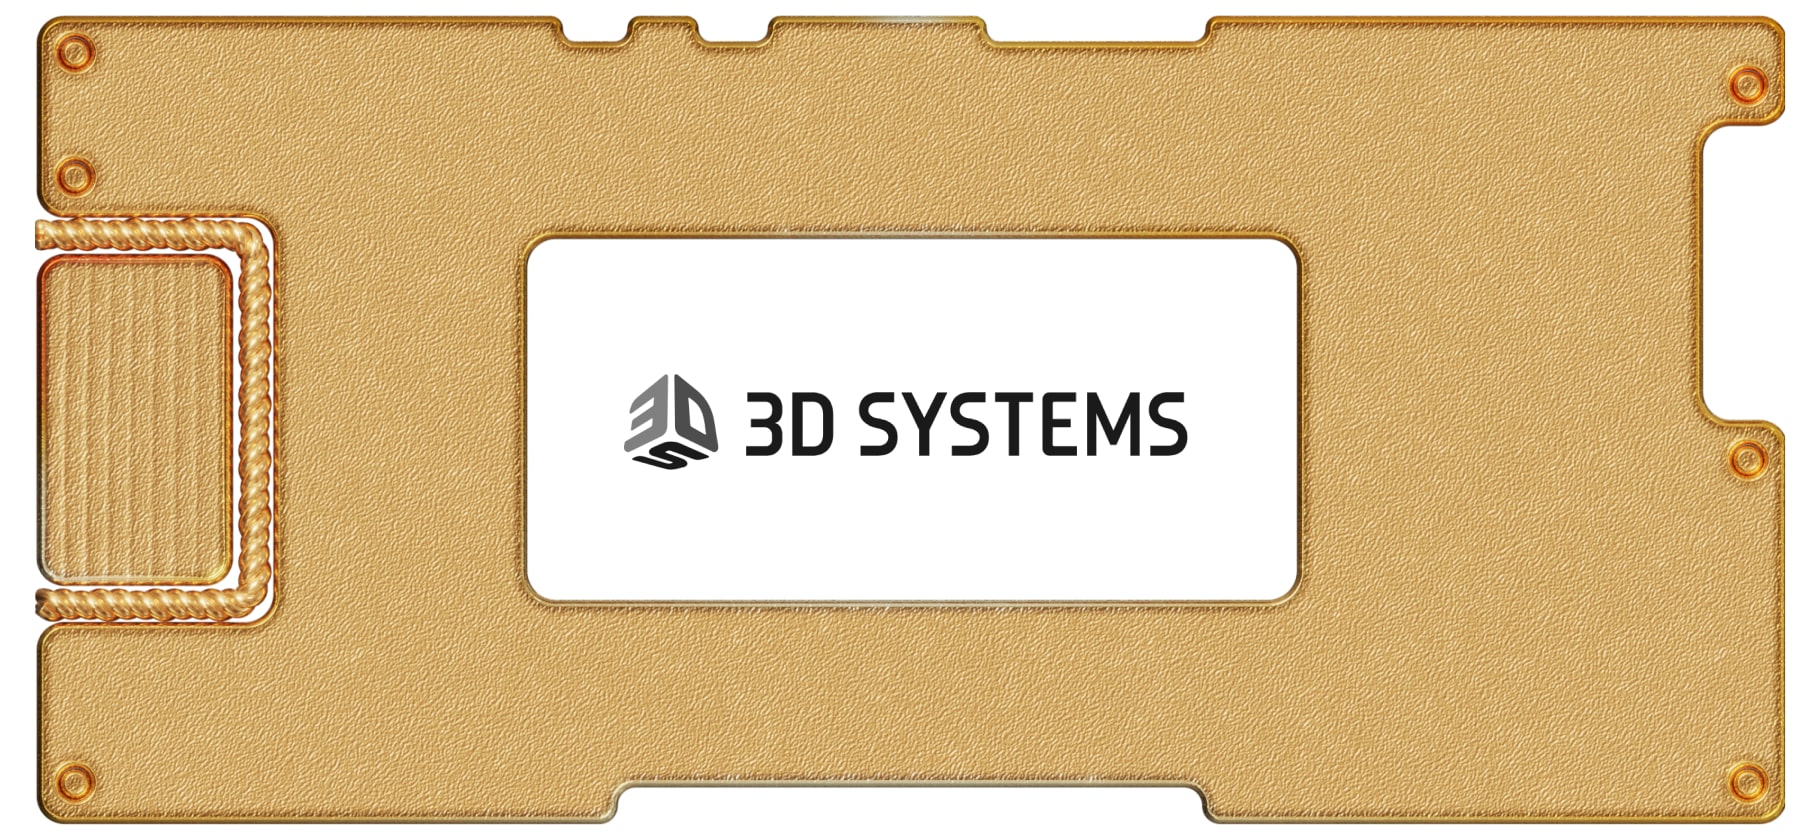 Инвестидея: 3D Systems, потому что 3Д-печать